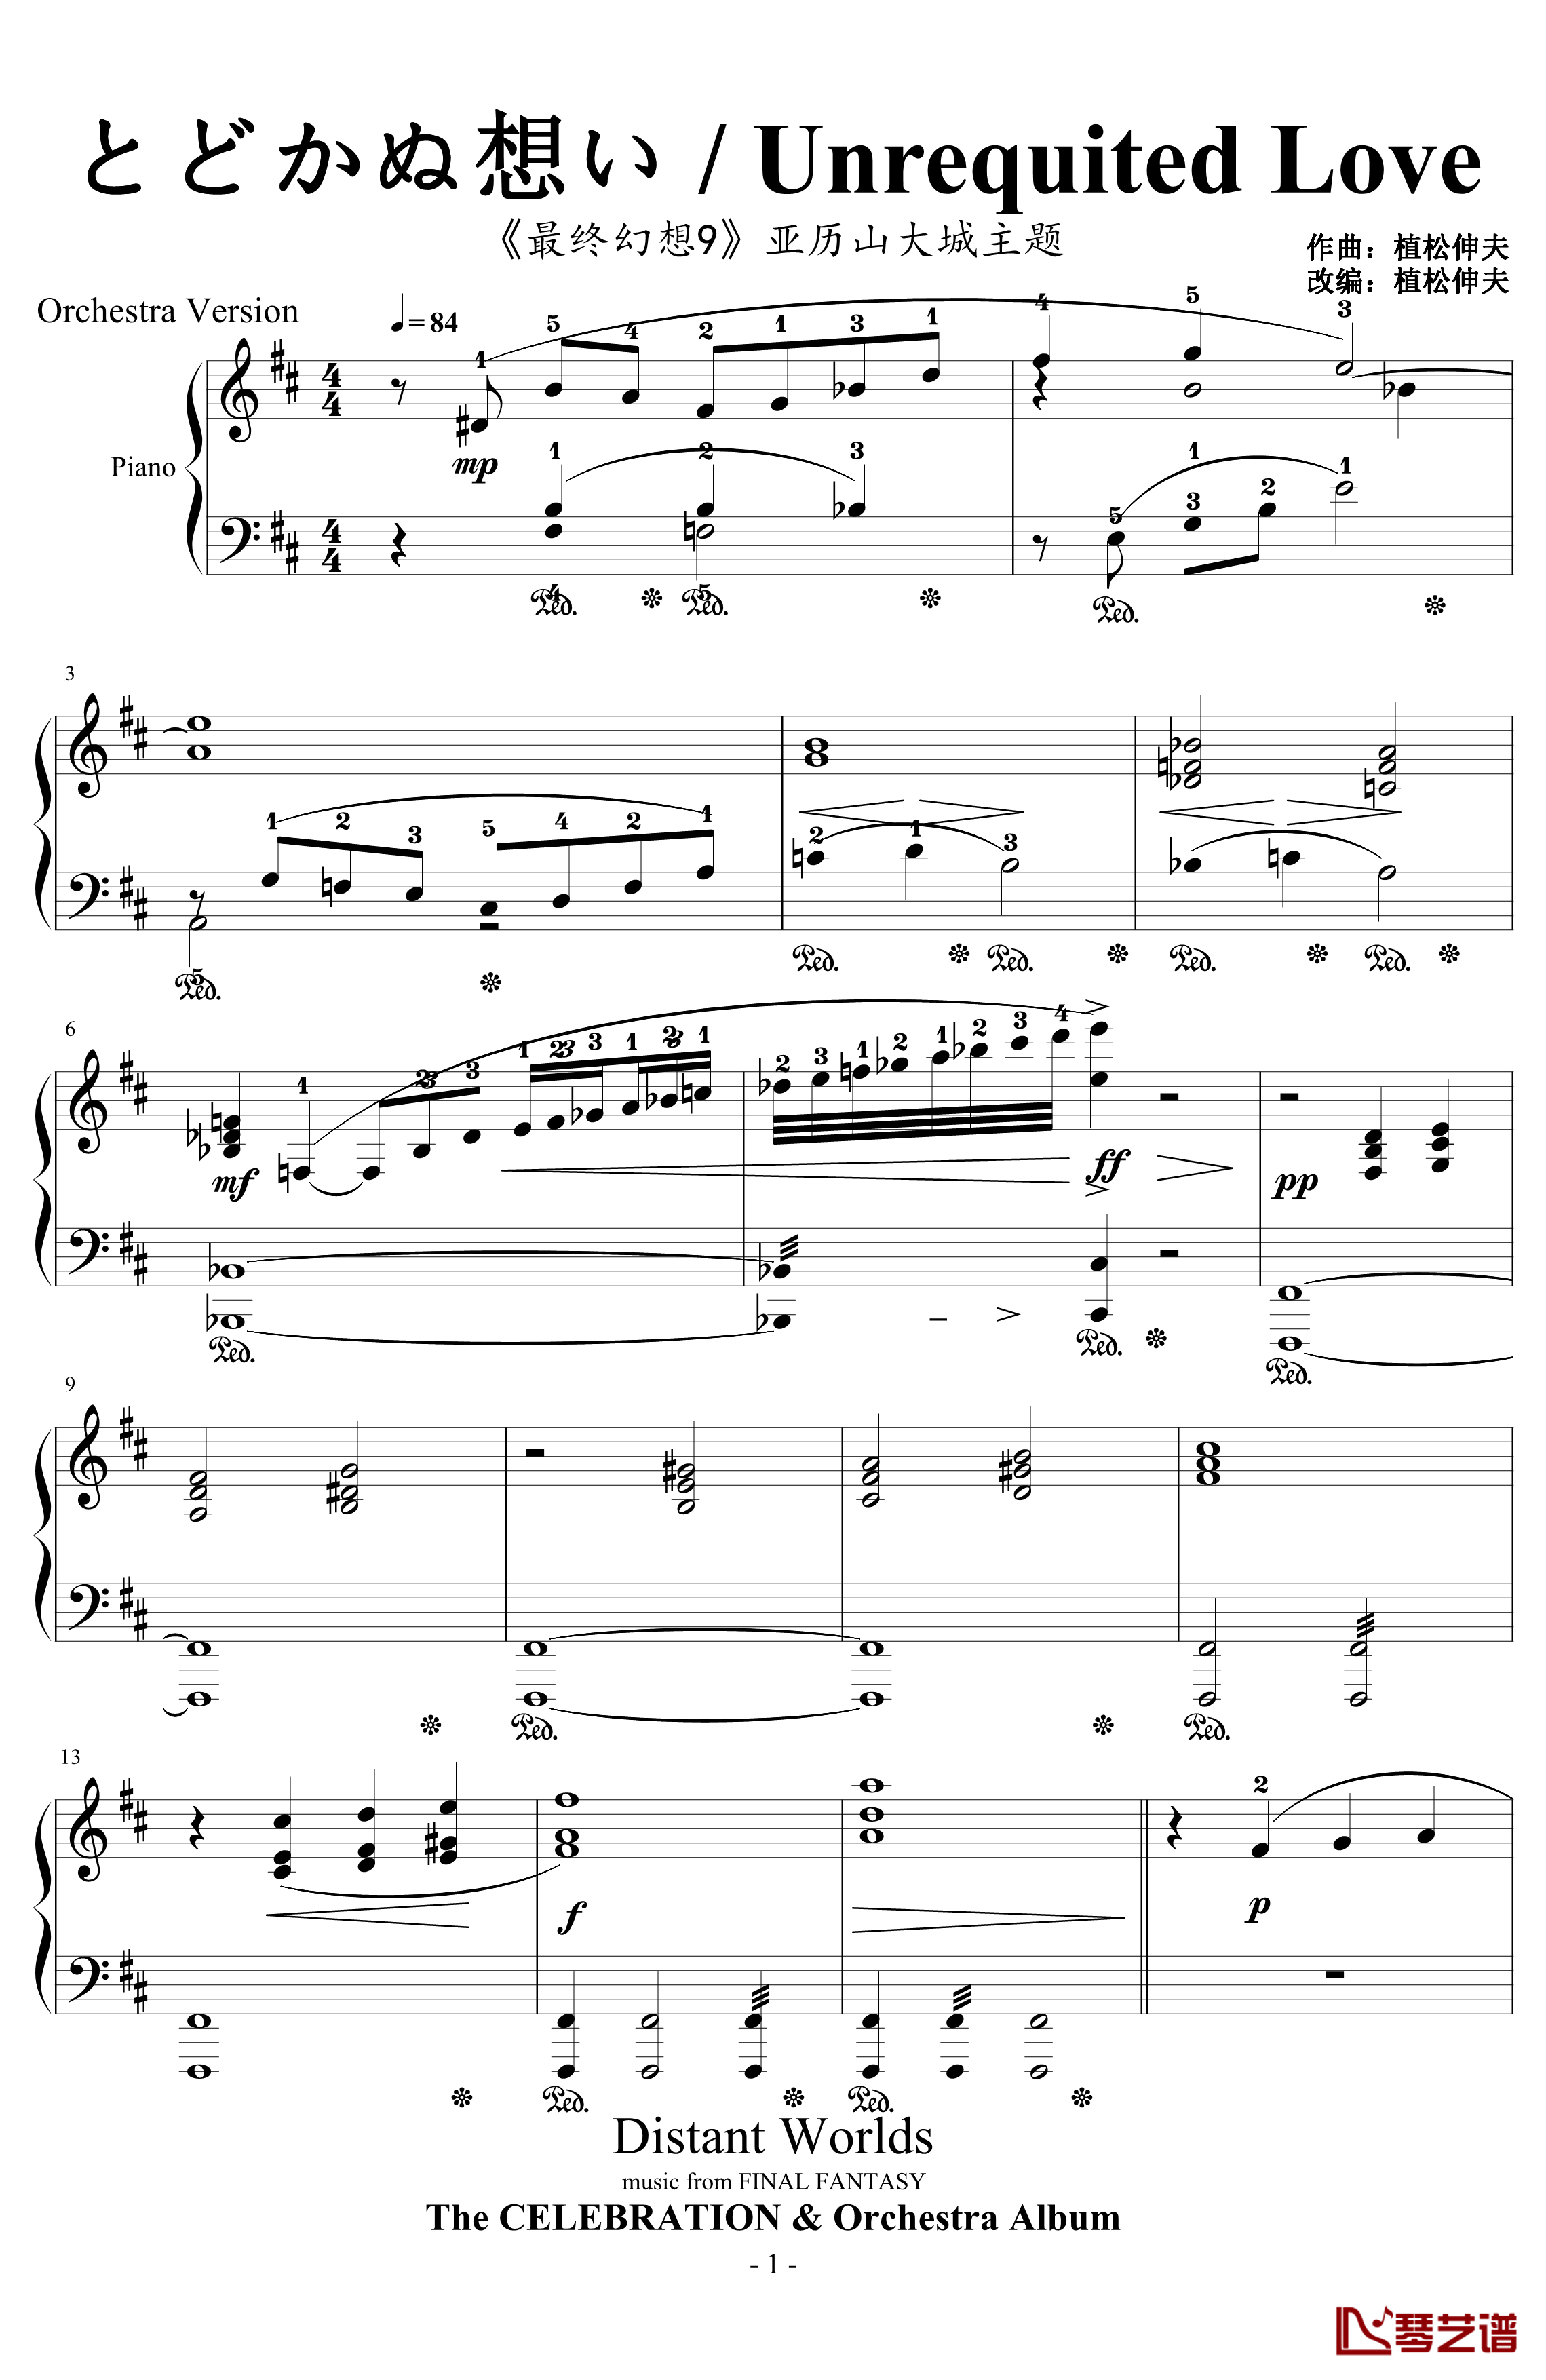 とどかぬ想い钢琴谱-from FF9 Orchestra Version-植松伸夫1